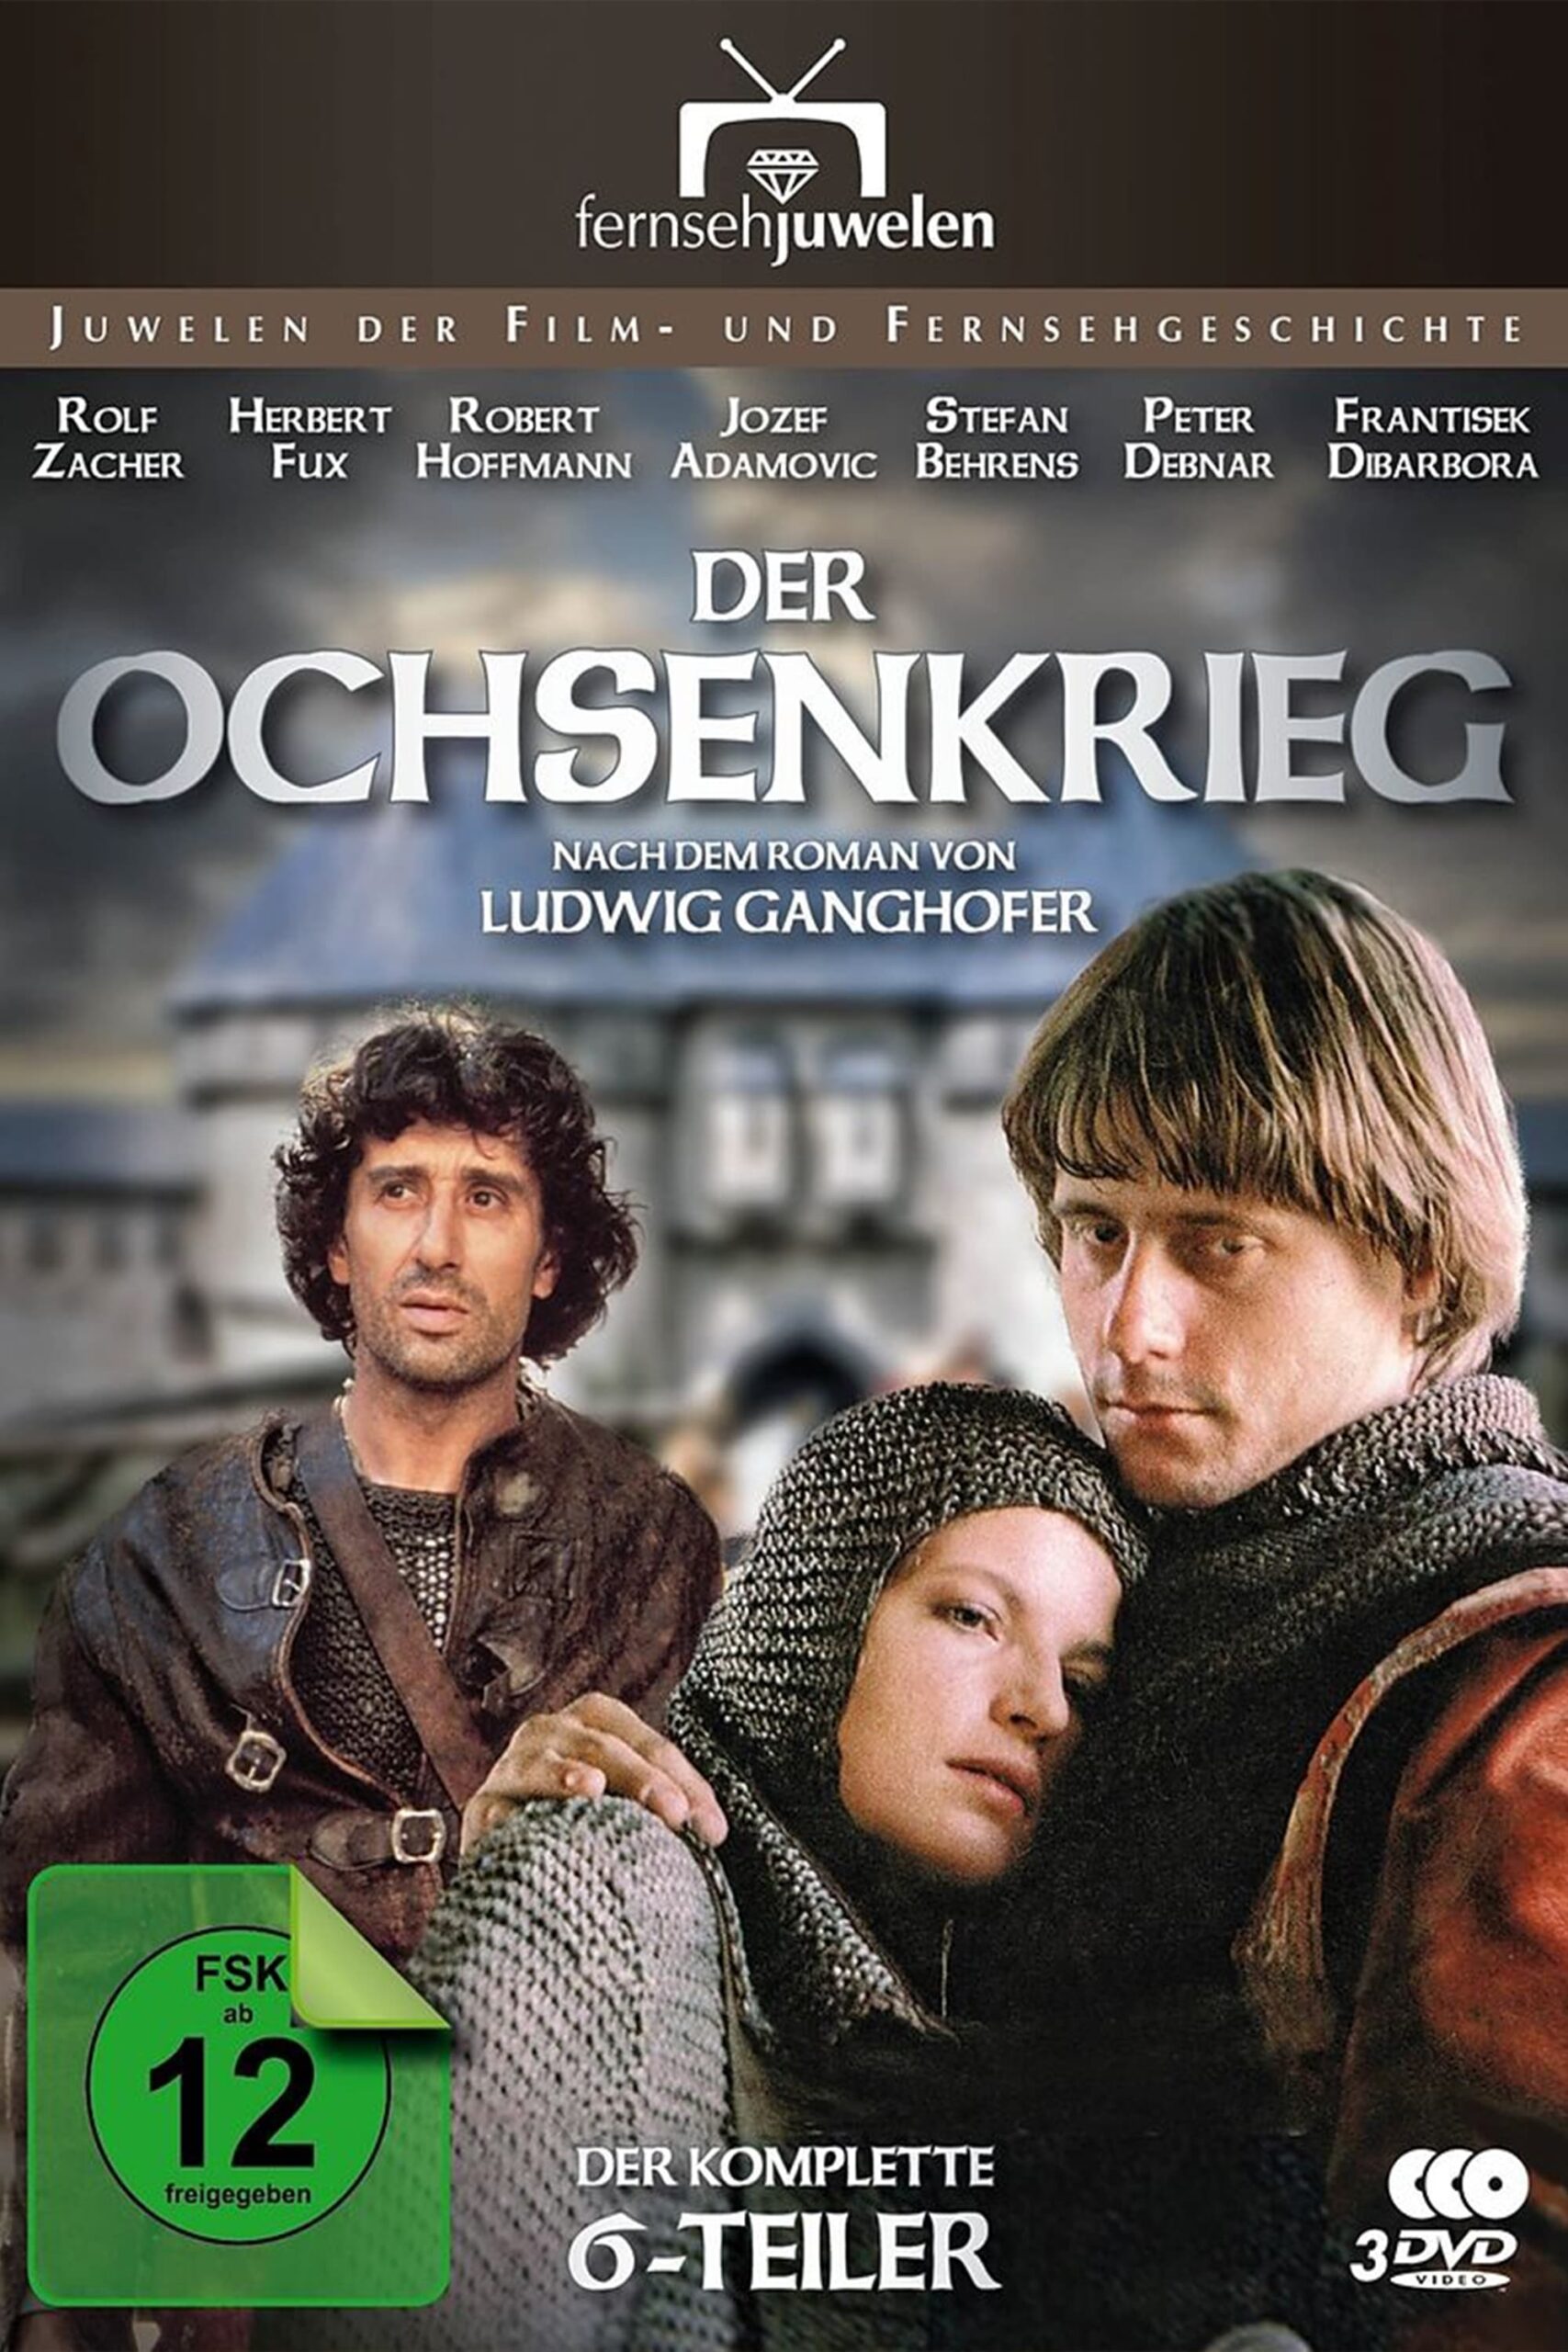 Plakát pro film “Válka volů”